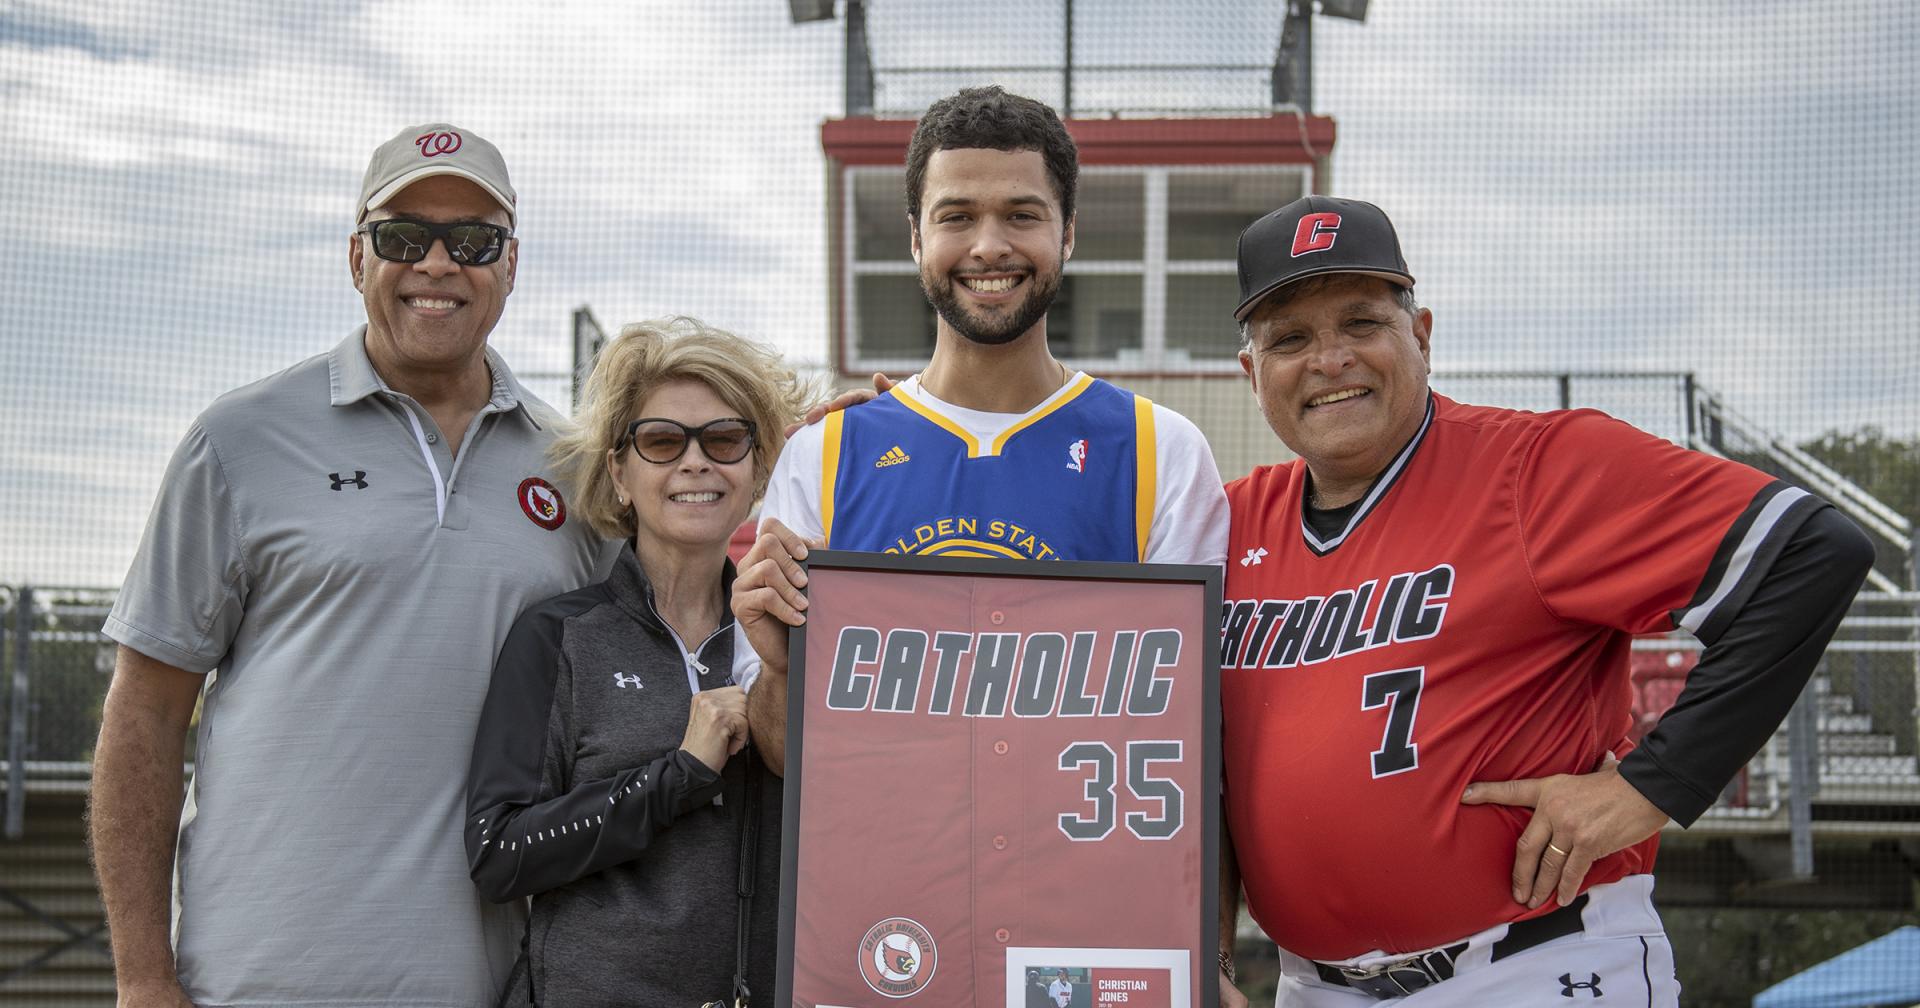 Jones Family poses with Baseball Head Coach Ross Natoli